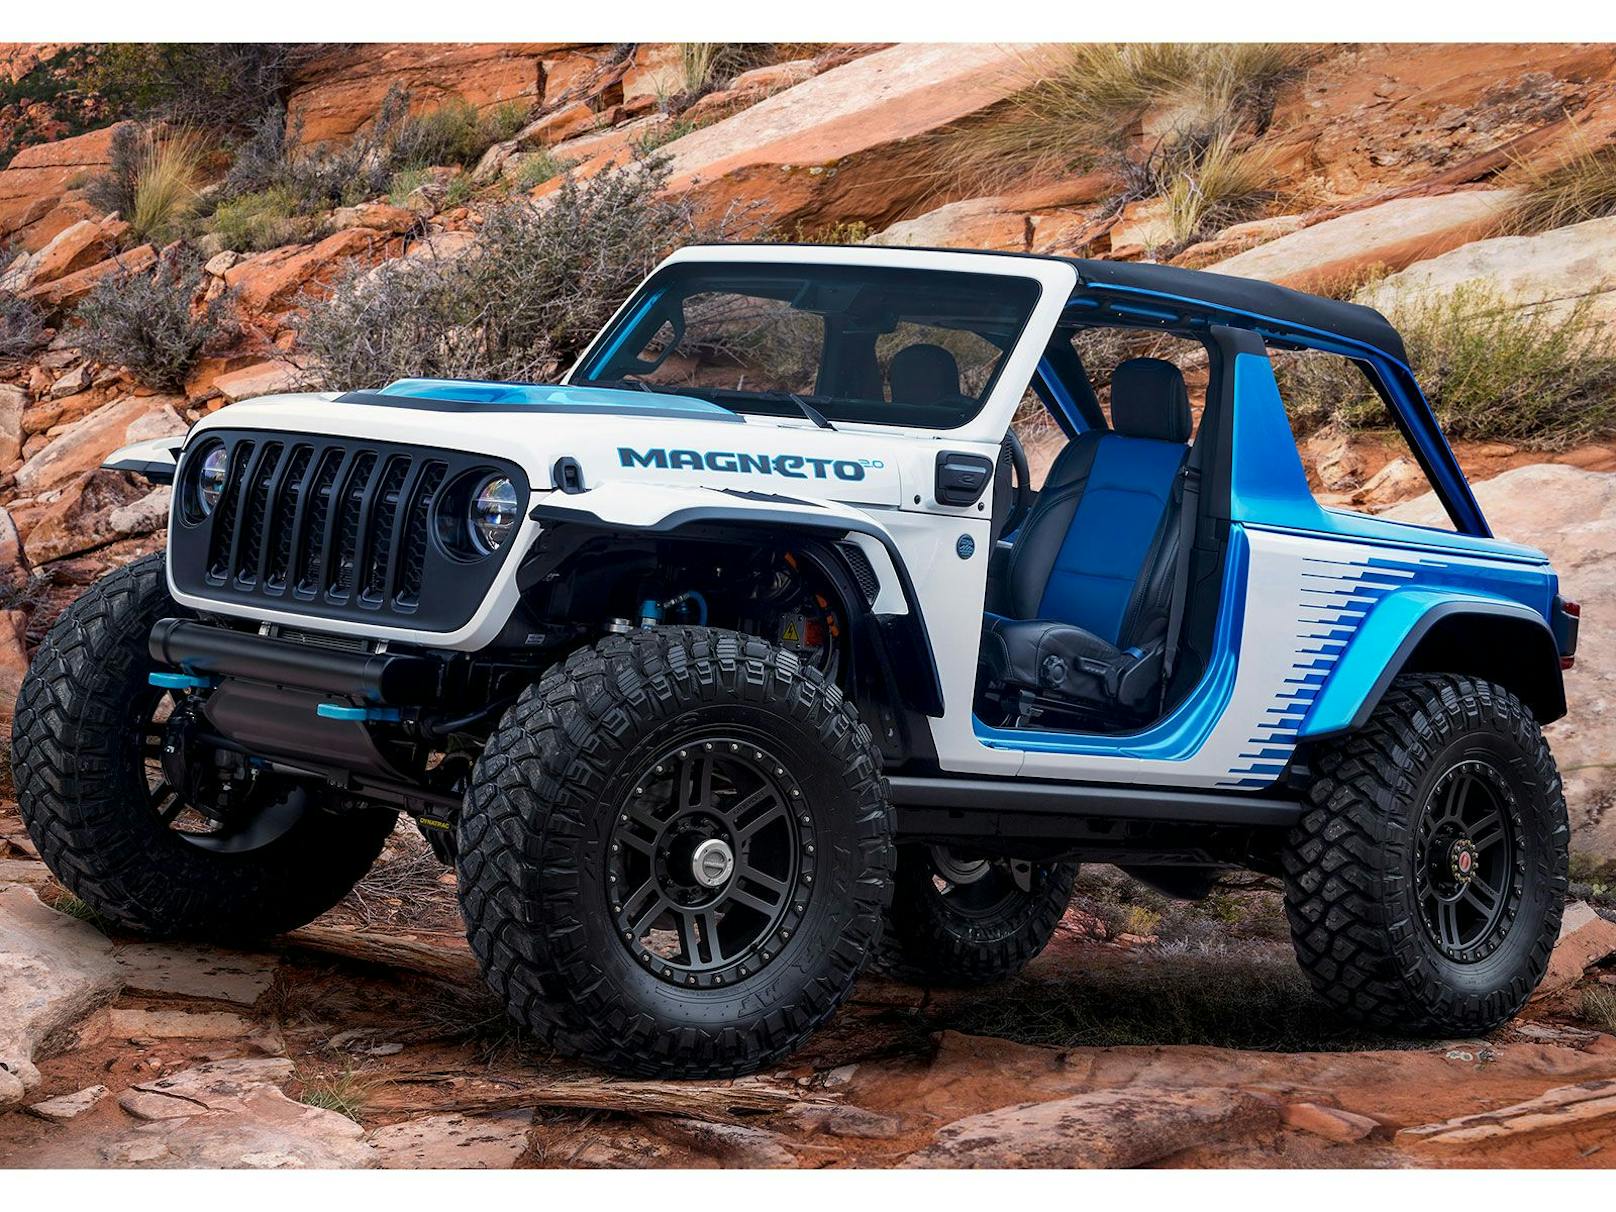 Der Jeep Wrangler Magneto 2.0 Concept ist mit rein elektrischem Antrieb unterwegs.